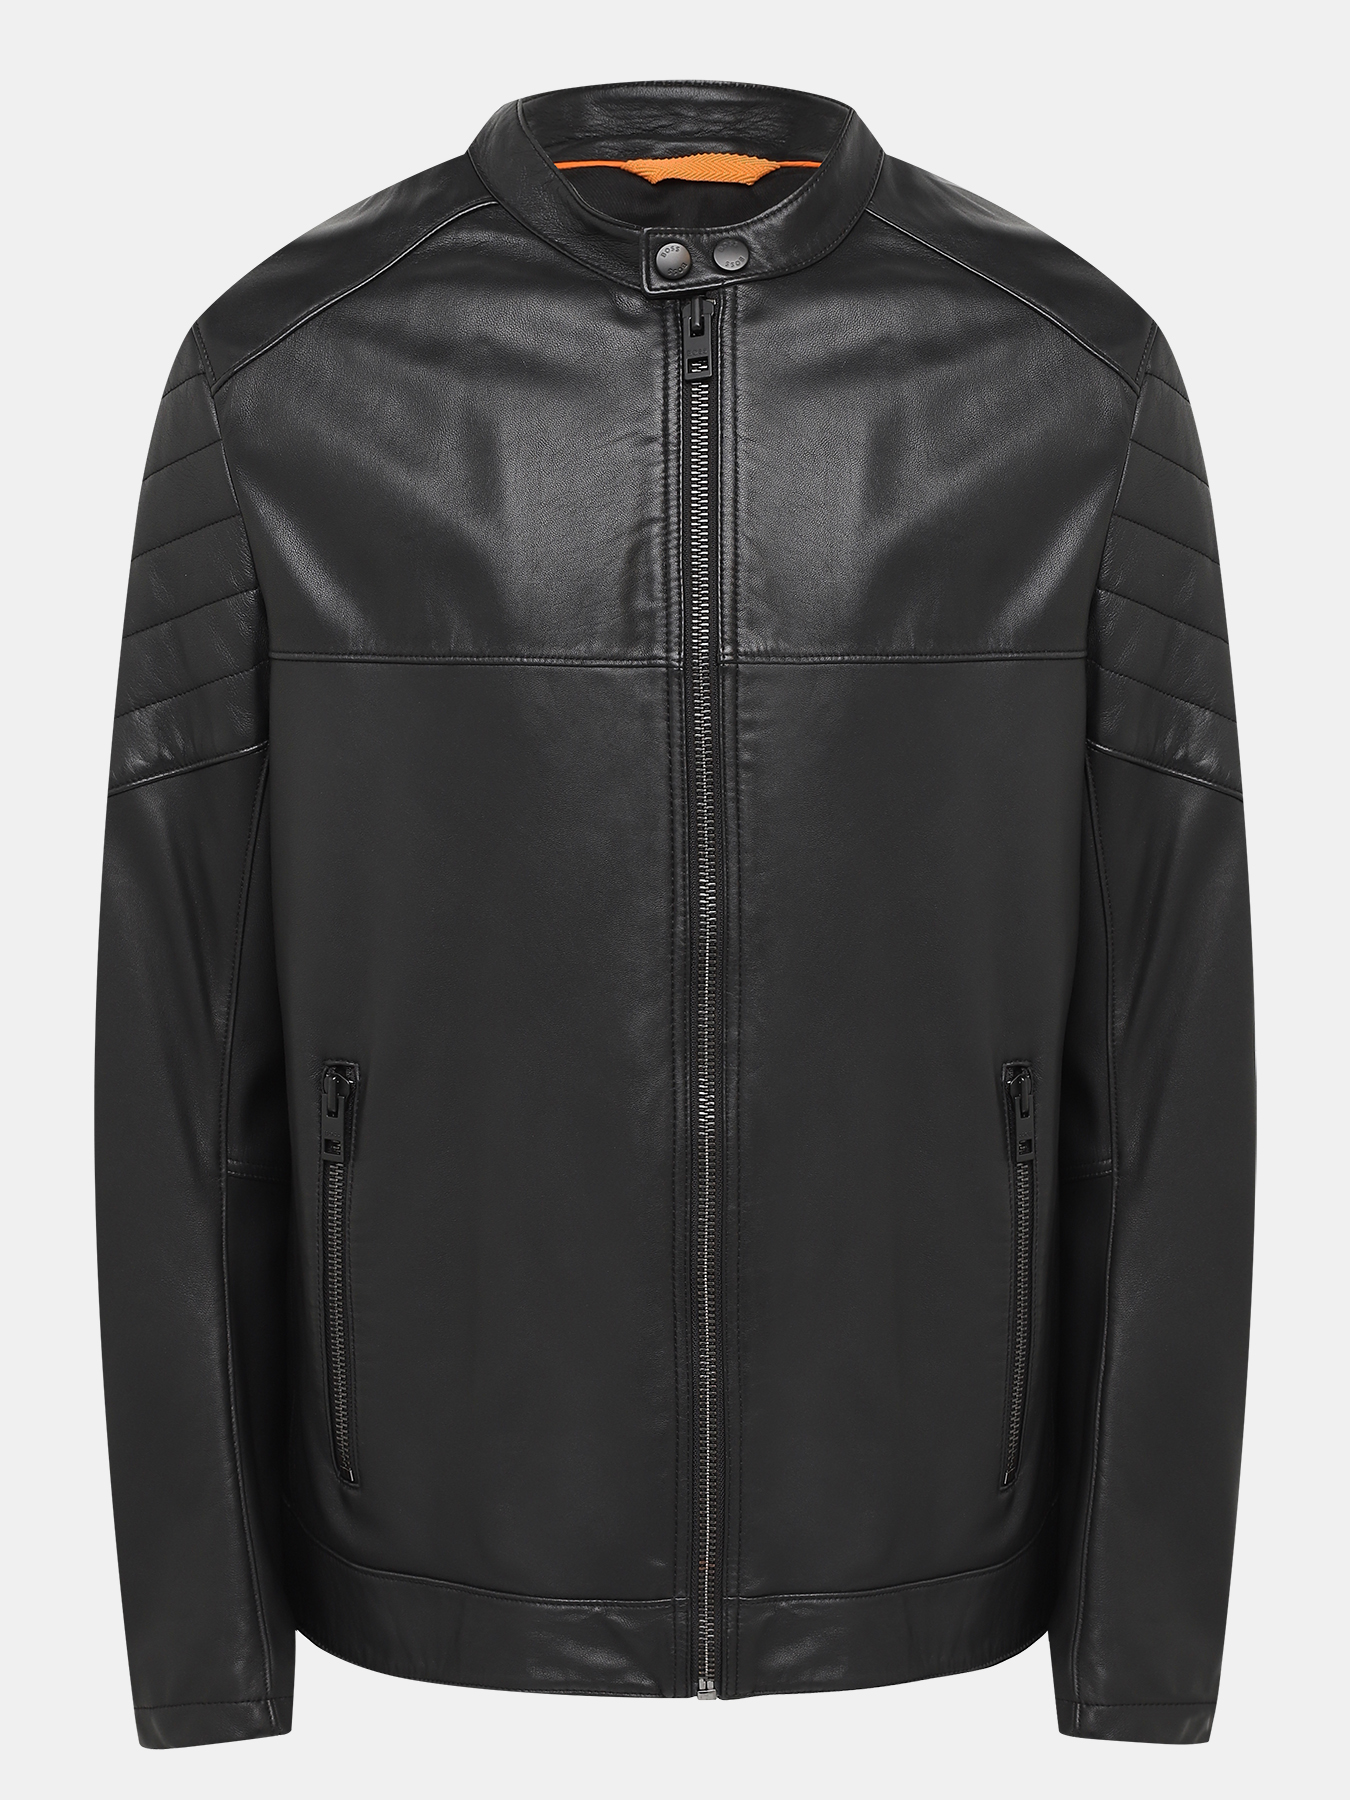 Кожаная куртка Joset BOSS 432916-029, цвет черный, размер 56